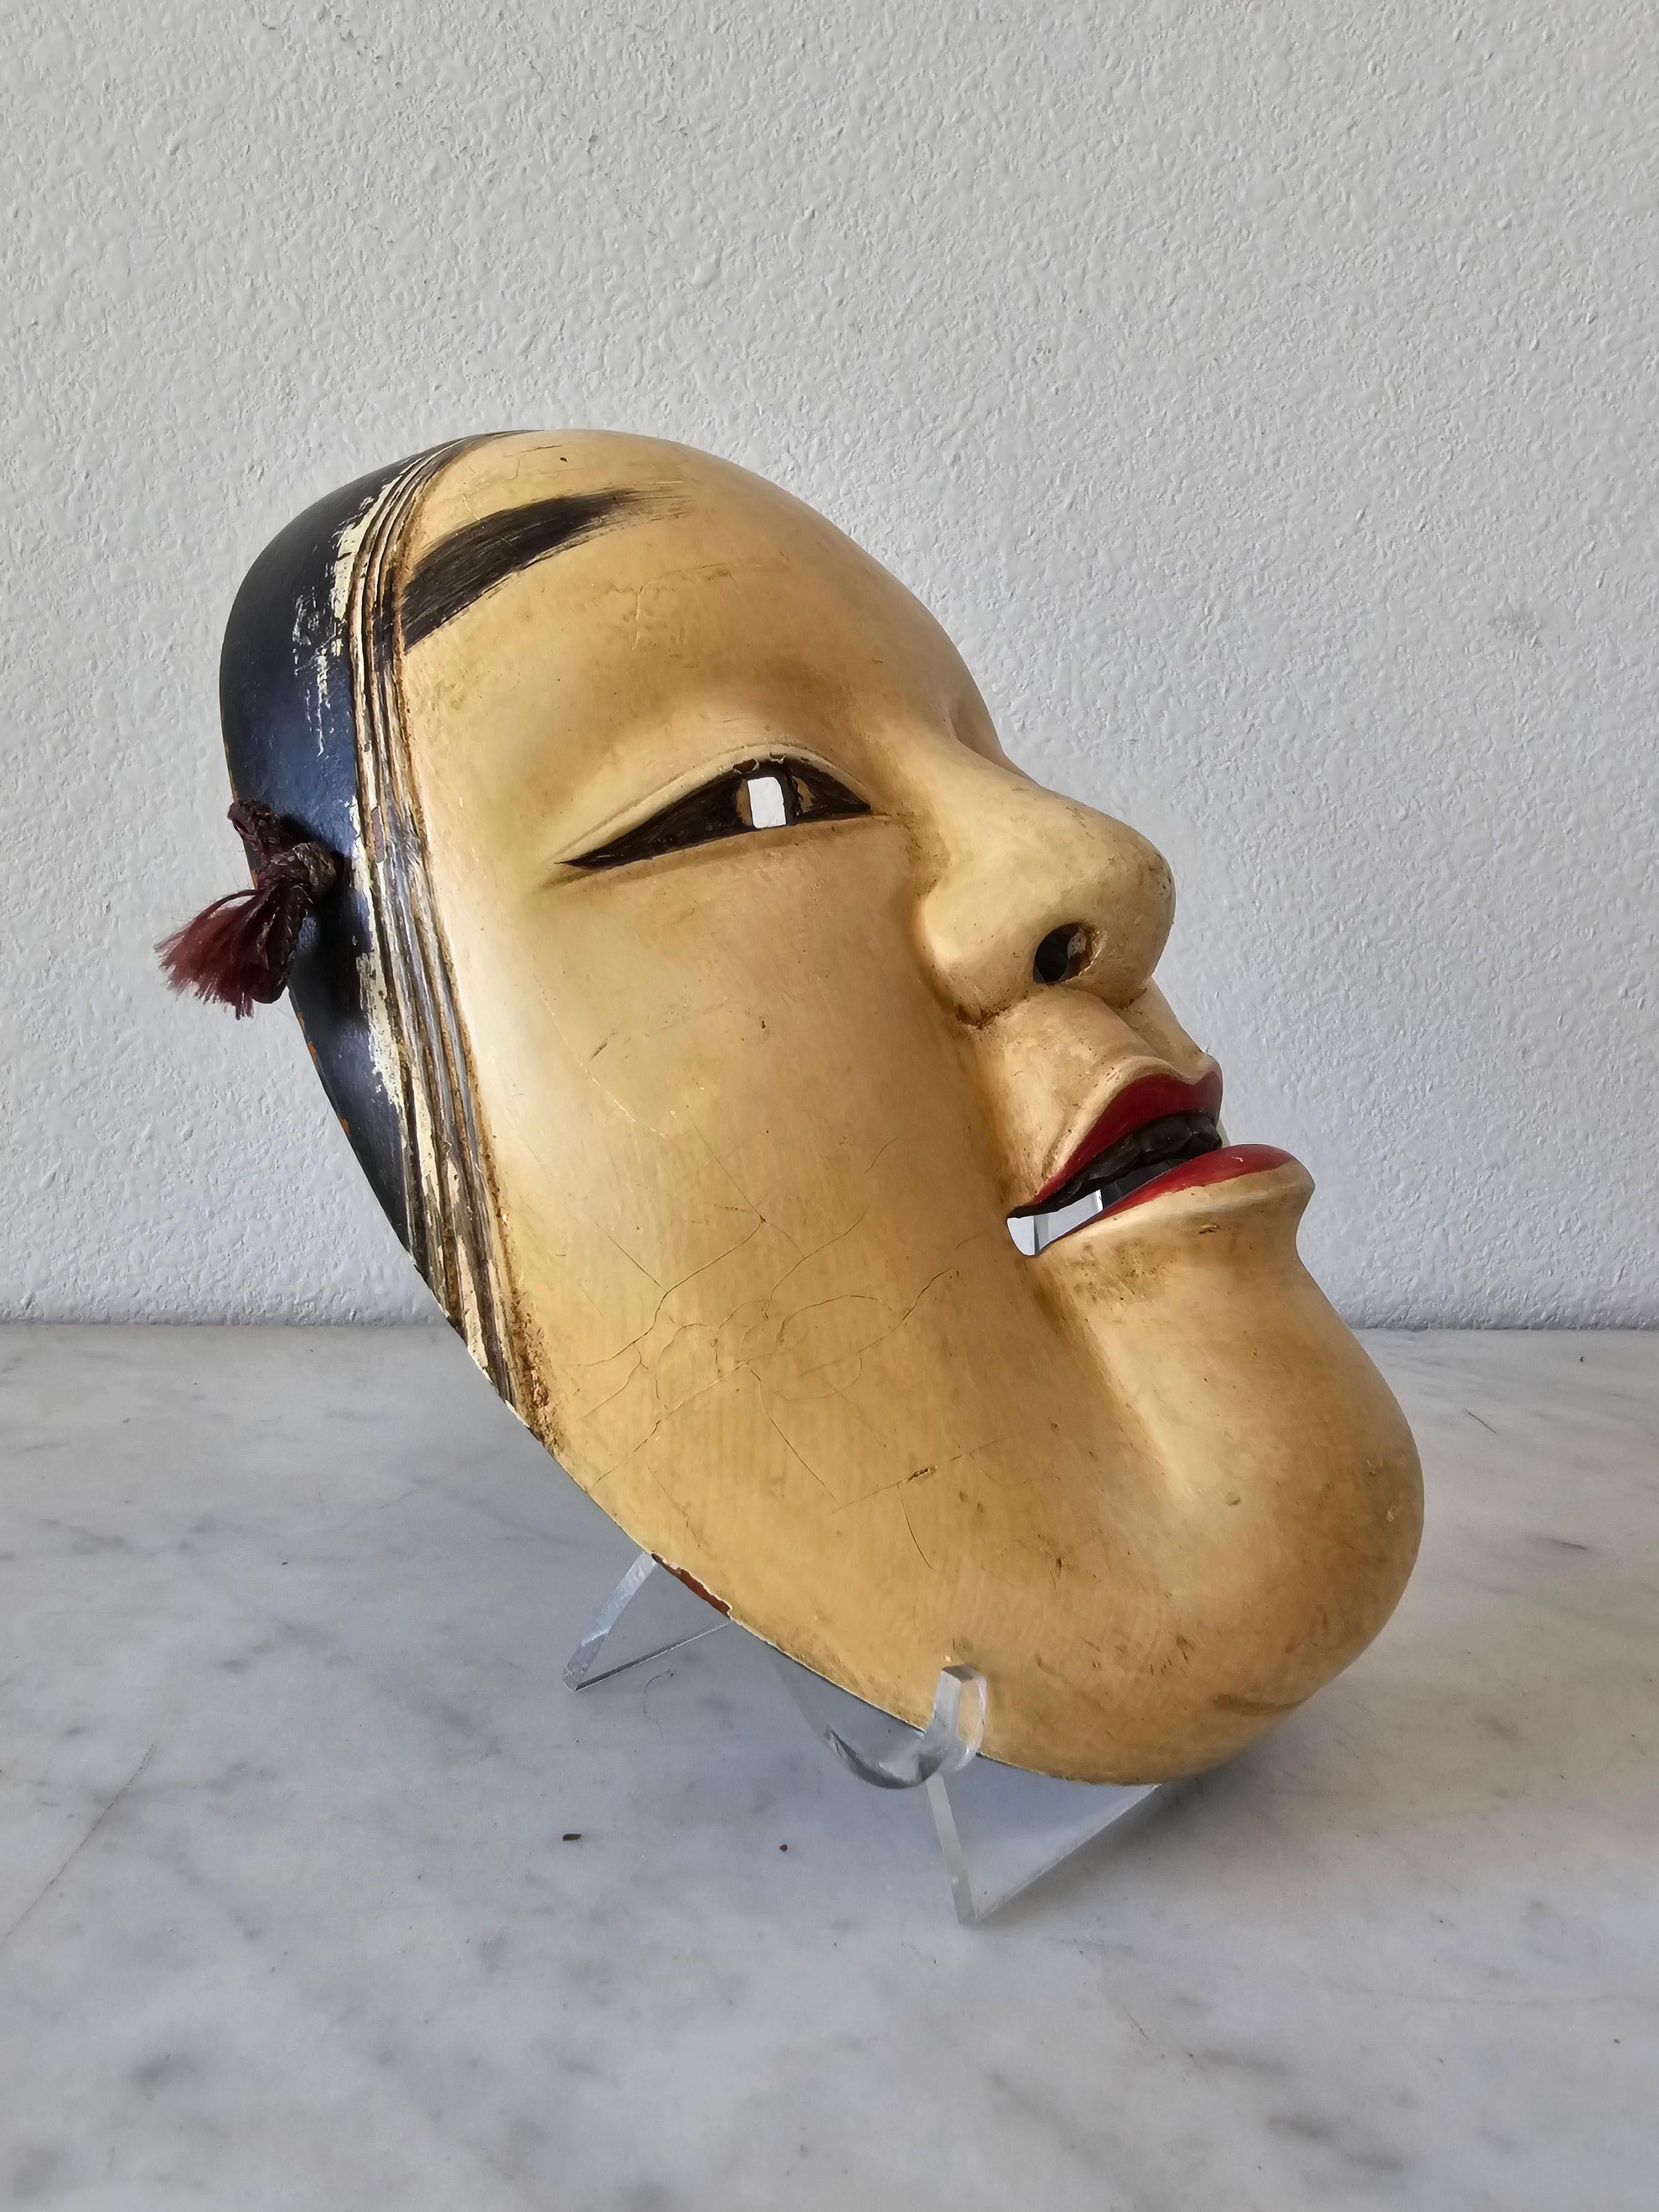 Masque de Ko-Omote en bois sculpté et peint à la main, rare et anciennement utilisé dans le théâtre nô japonais.

Sculptés au Japon au XIXe siècle, les masques nô Ko-omote (littéralement 